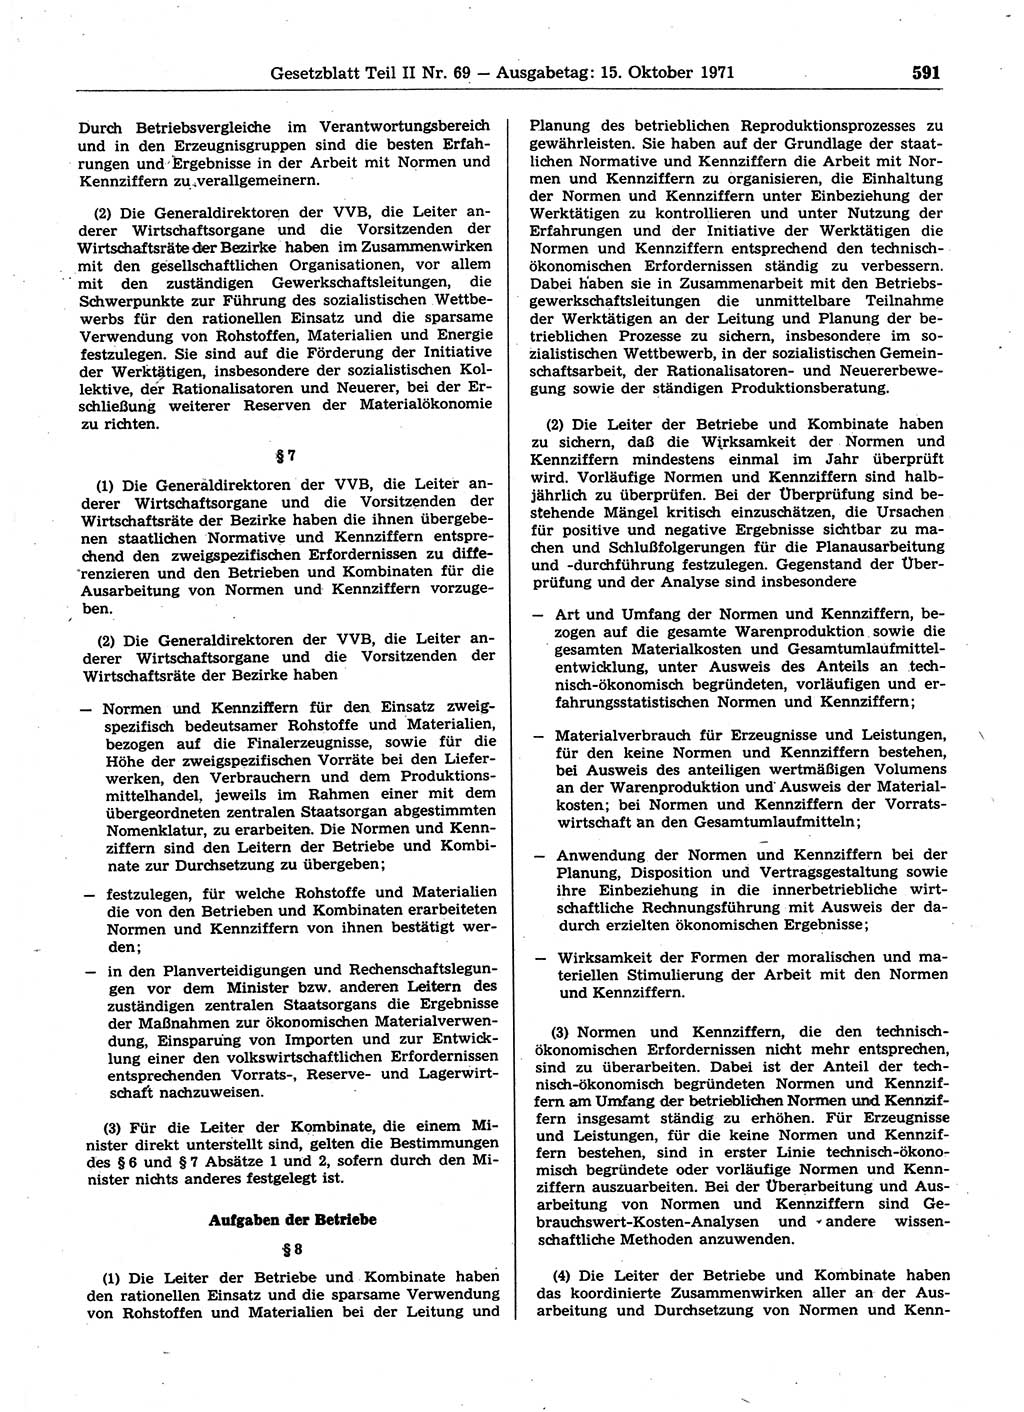 Gesetzblatt (GBl.) der Deutschen Demokratischen Republik (DDR) Teil ⅠⅠ 1971, Seite 591 (GBl. DDR ⅠⅠ 1971, S. 591)